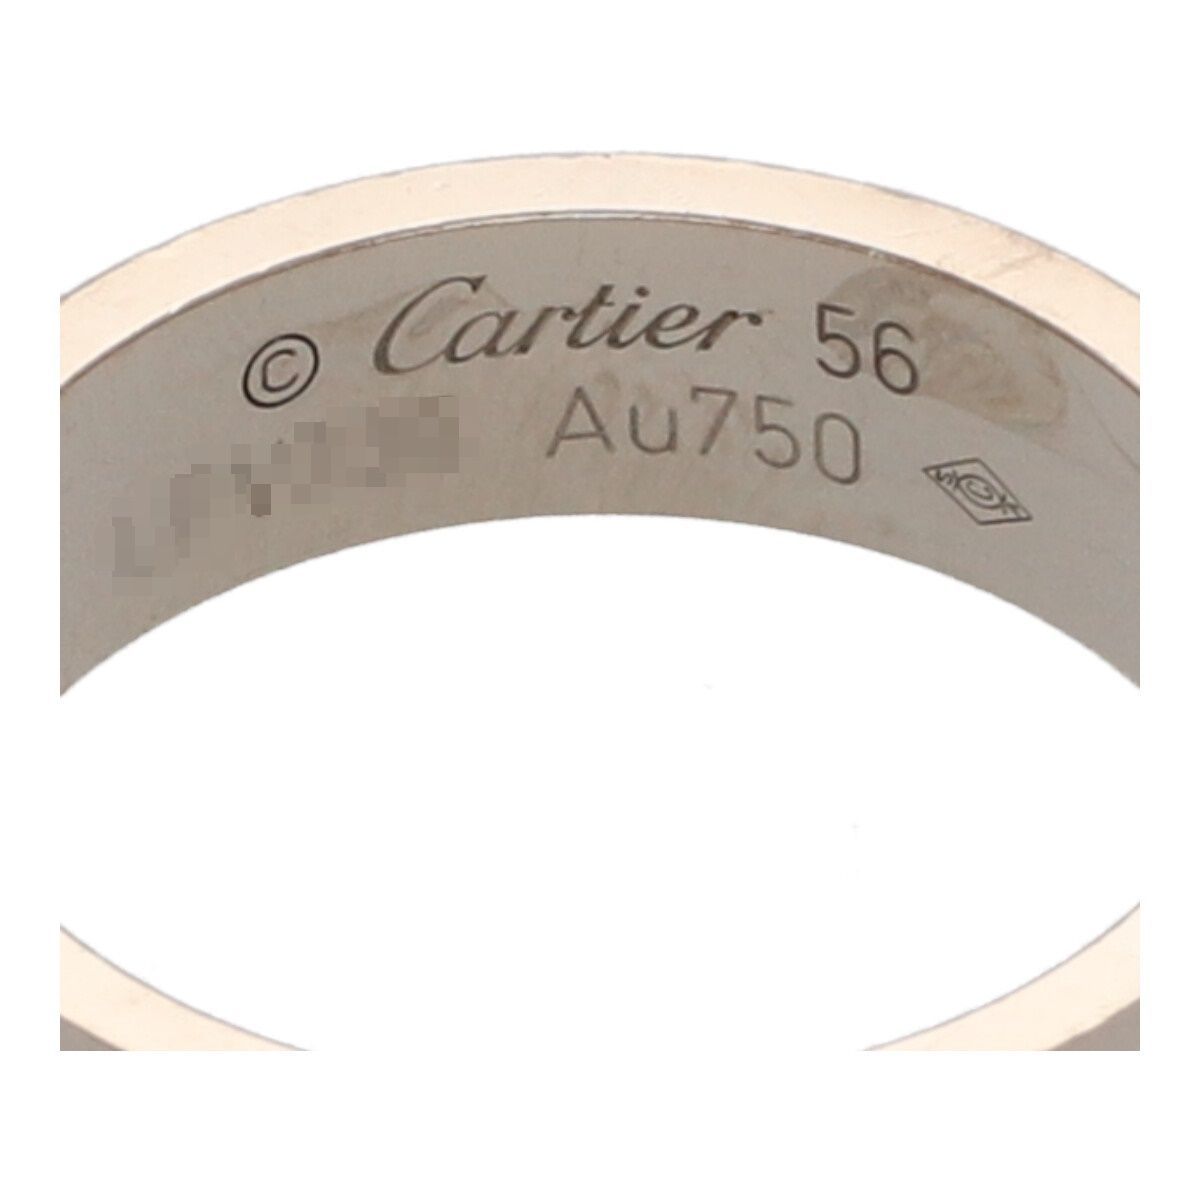 【中古】 Cartier カルティエ LOVE リング 56 B4084700 K18WG ホワイトゴールド ラブ リング 23019213 RS_画像7